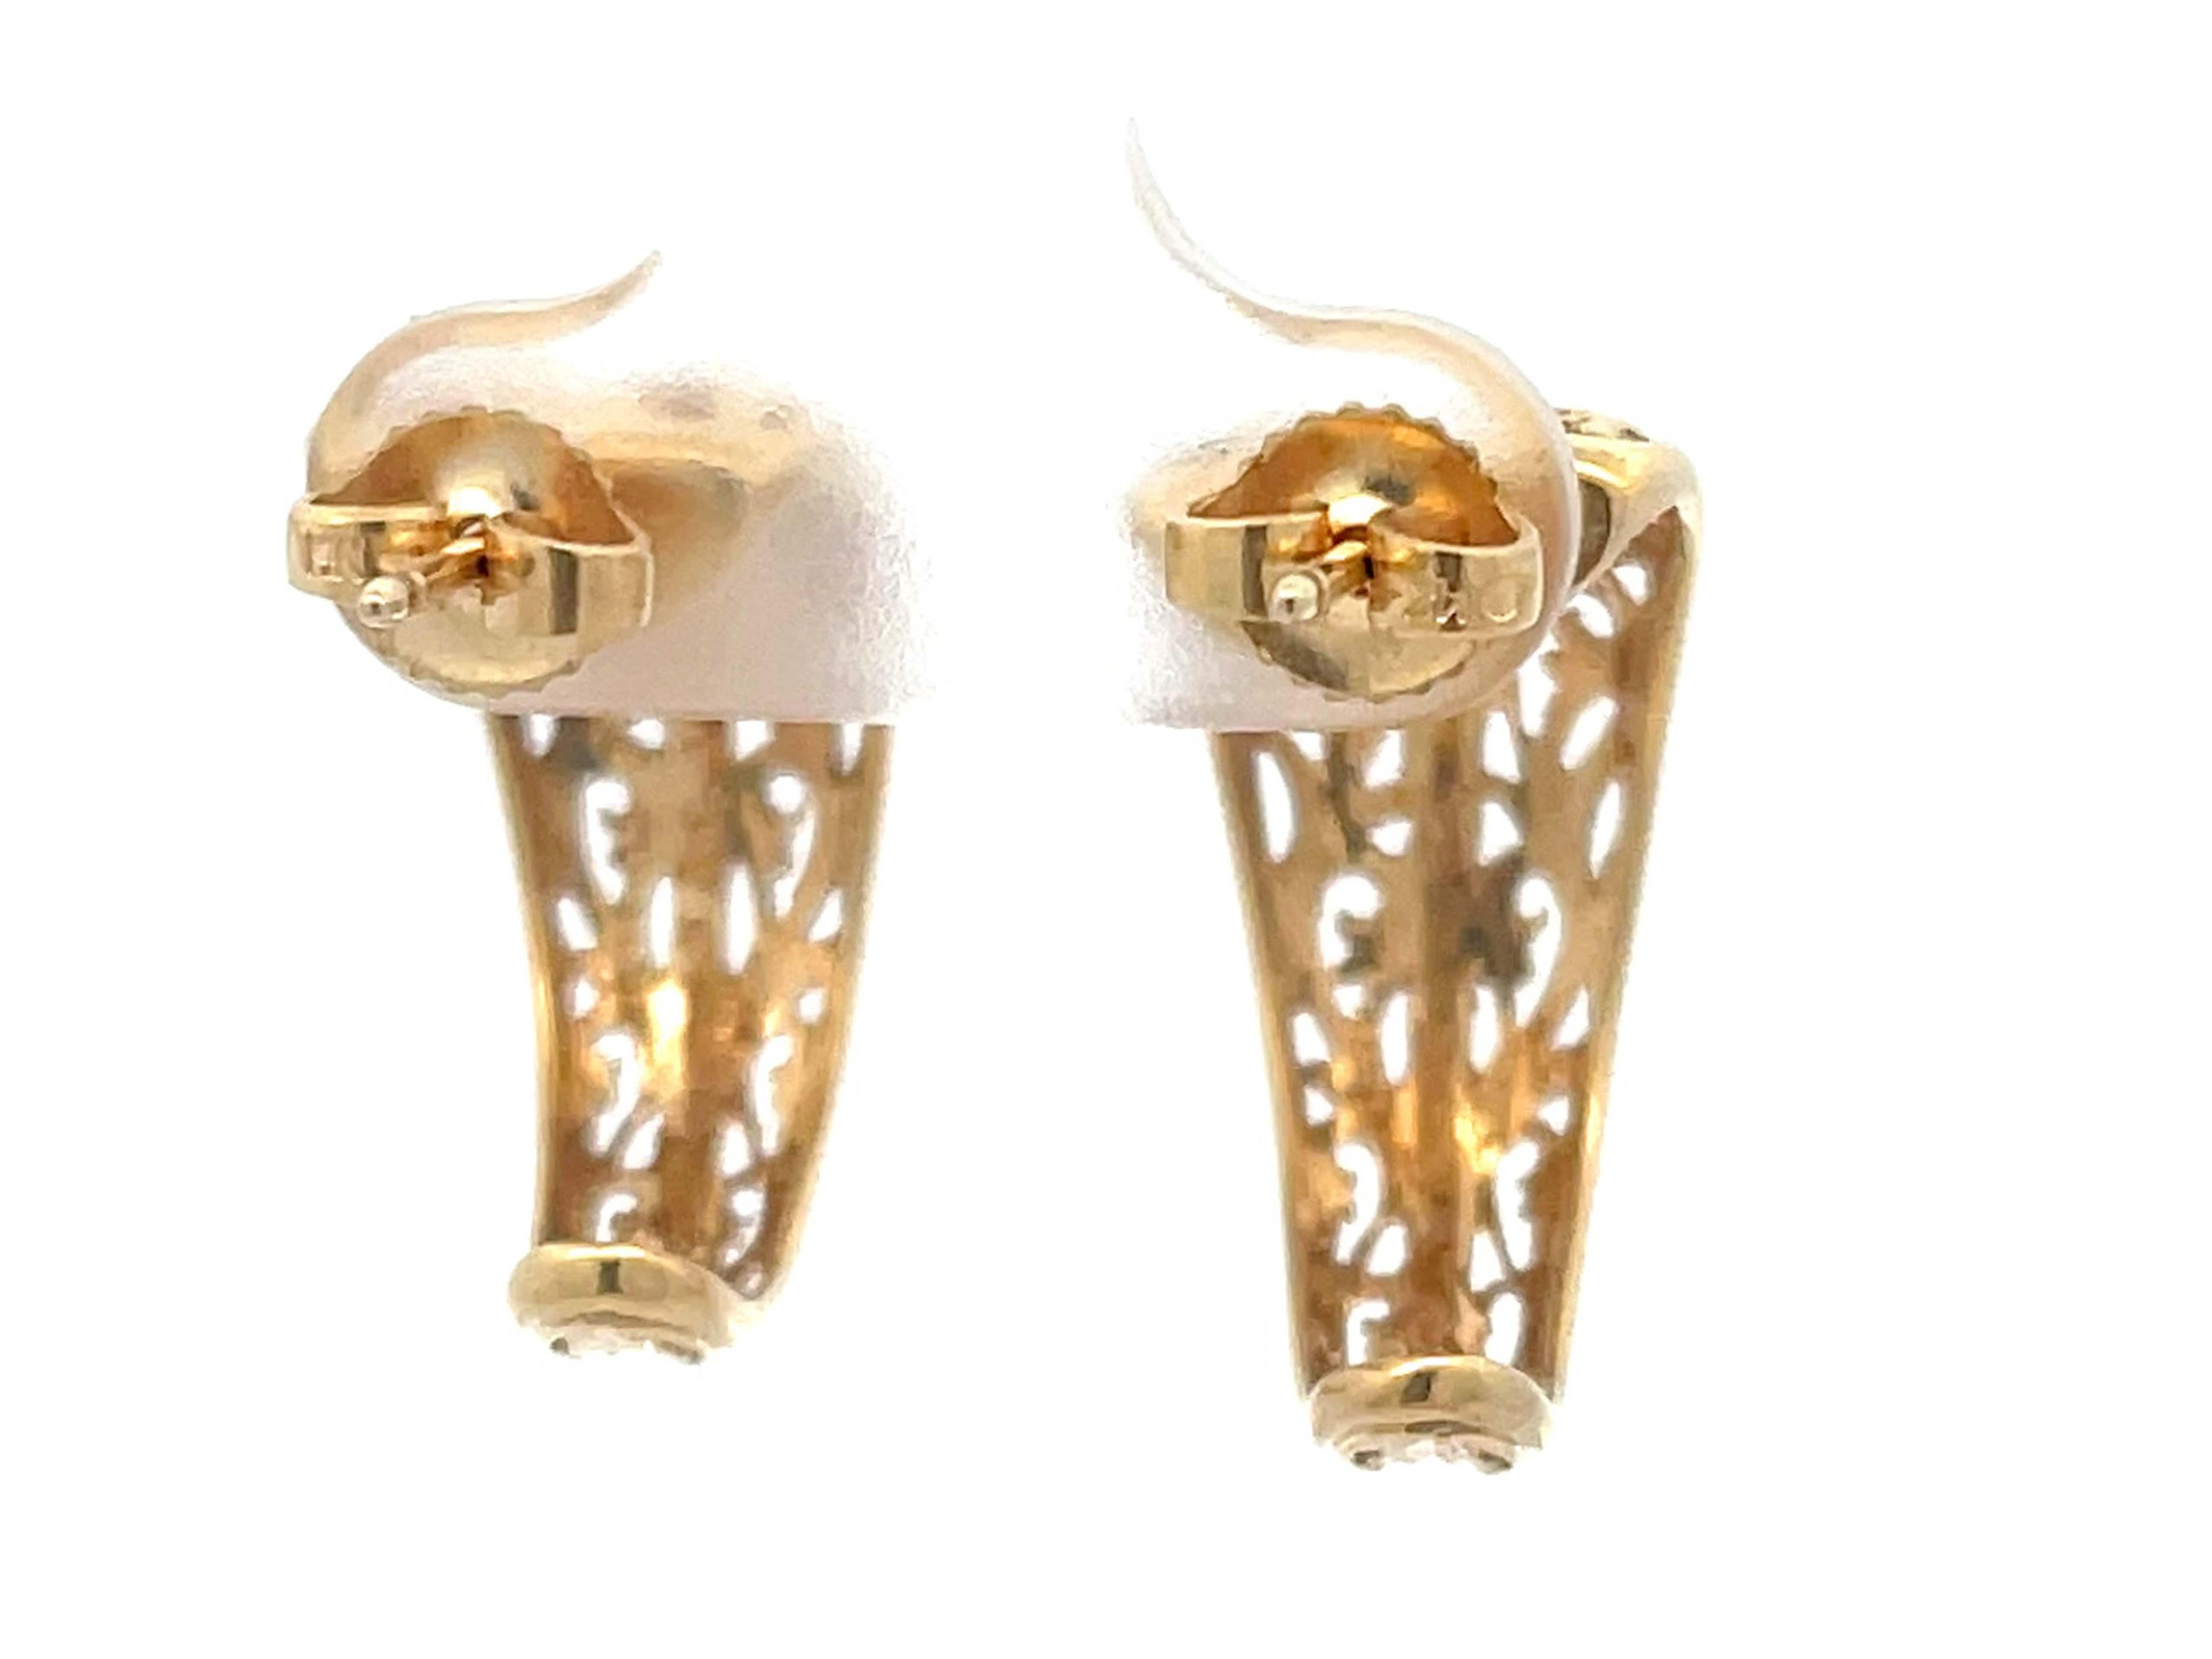 Mings Pierced Scroll Design Wide Half Hoop Earrings in 14k Yellow Gold For Sale 1